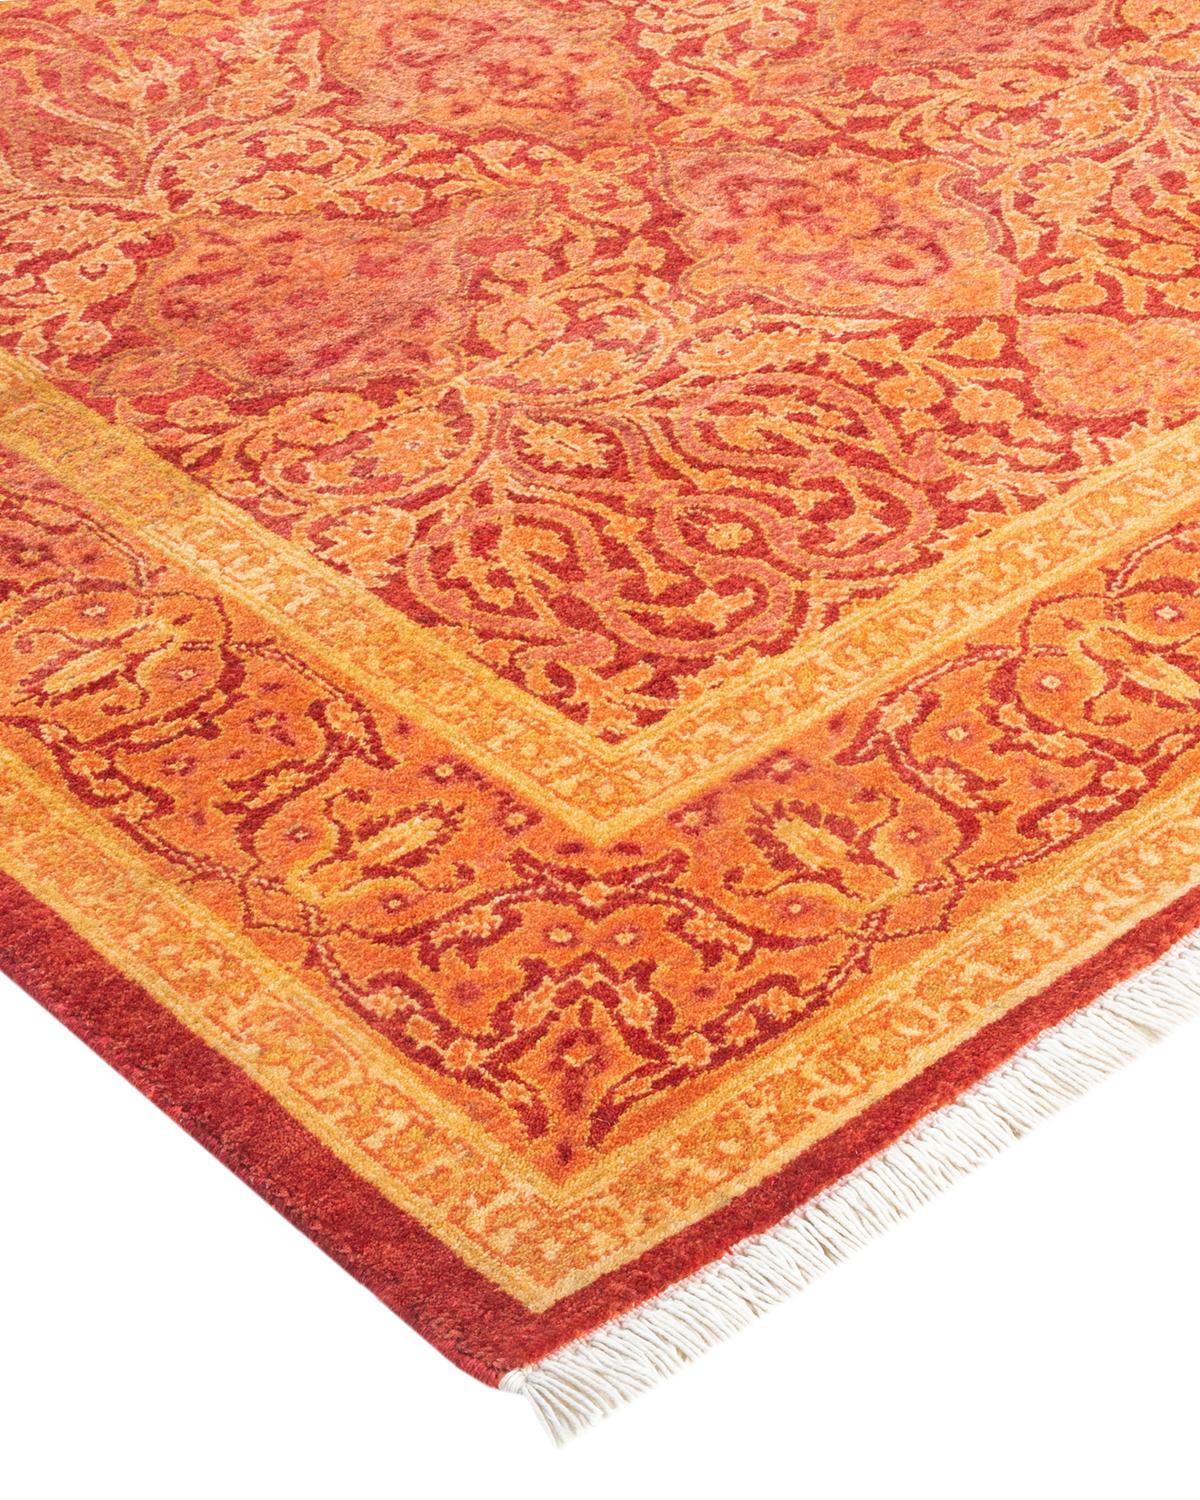 Die Teppiche der Mogul Collection bringen mit ihren dezenten Farben und Allover-Mustern zeitlose Raffinesse in jeden Raum. Beeinflusst von einem Spektrum türkischer, indischer und persischer Designs, lassen die Kunsthandwerker, die diese